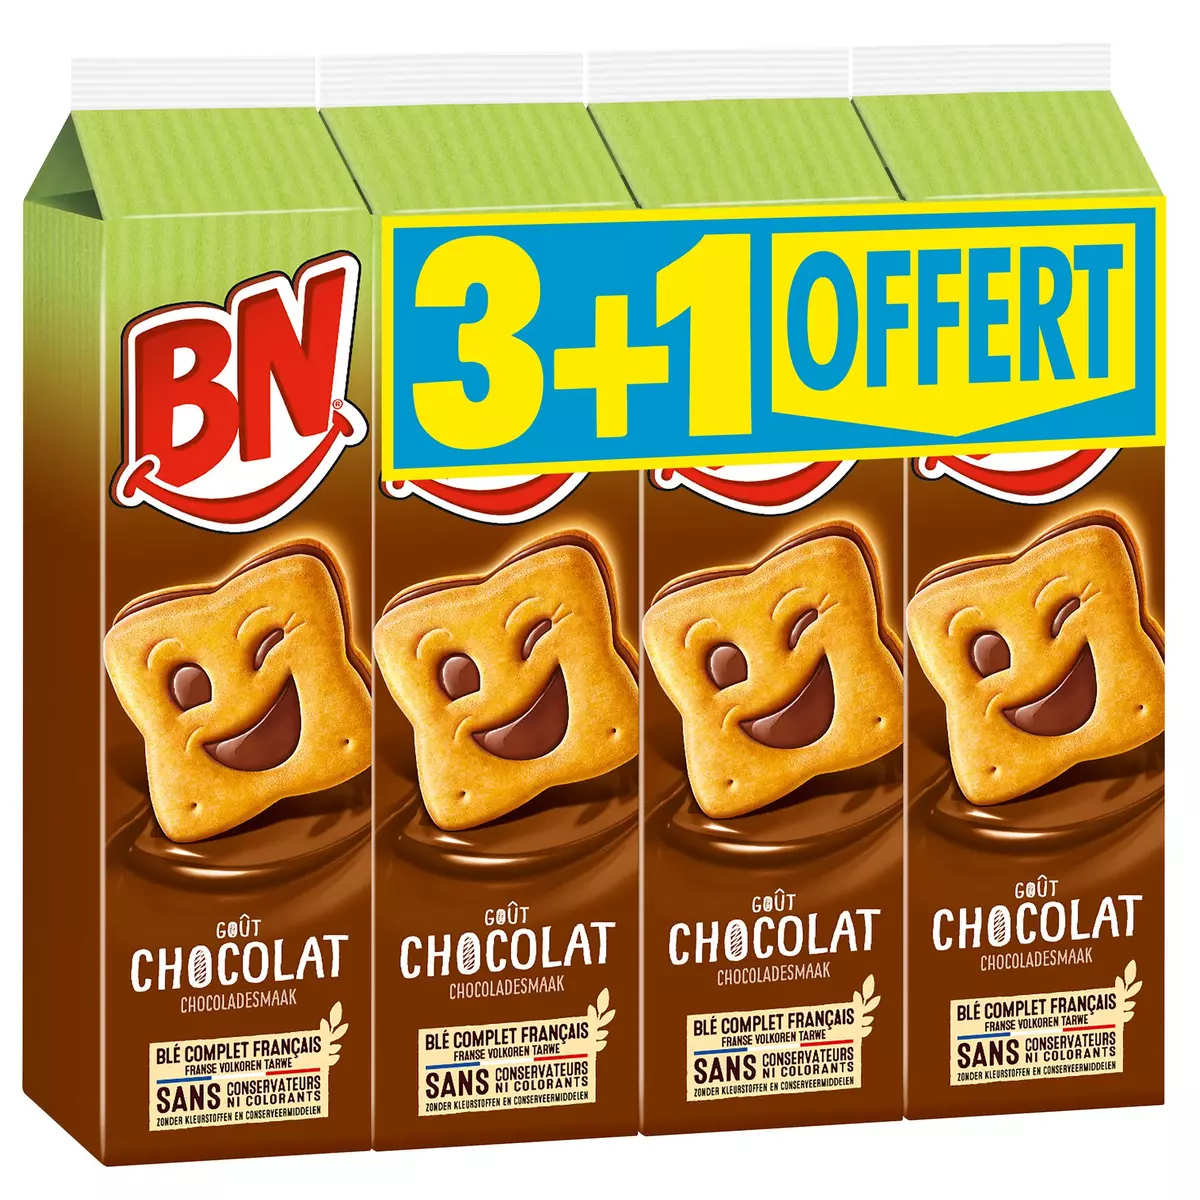 BN Biscuits fourrés aux céréales complètes gout chocolat 3+1offert 1,140kg